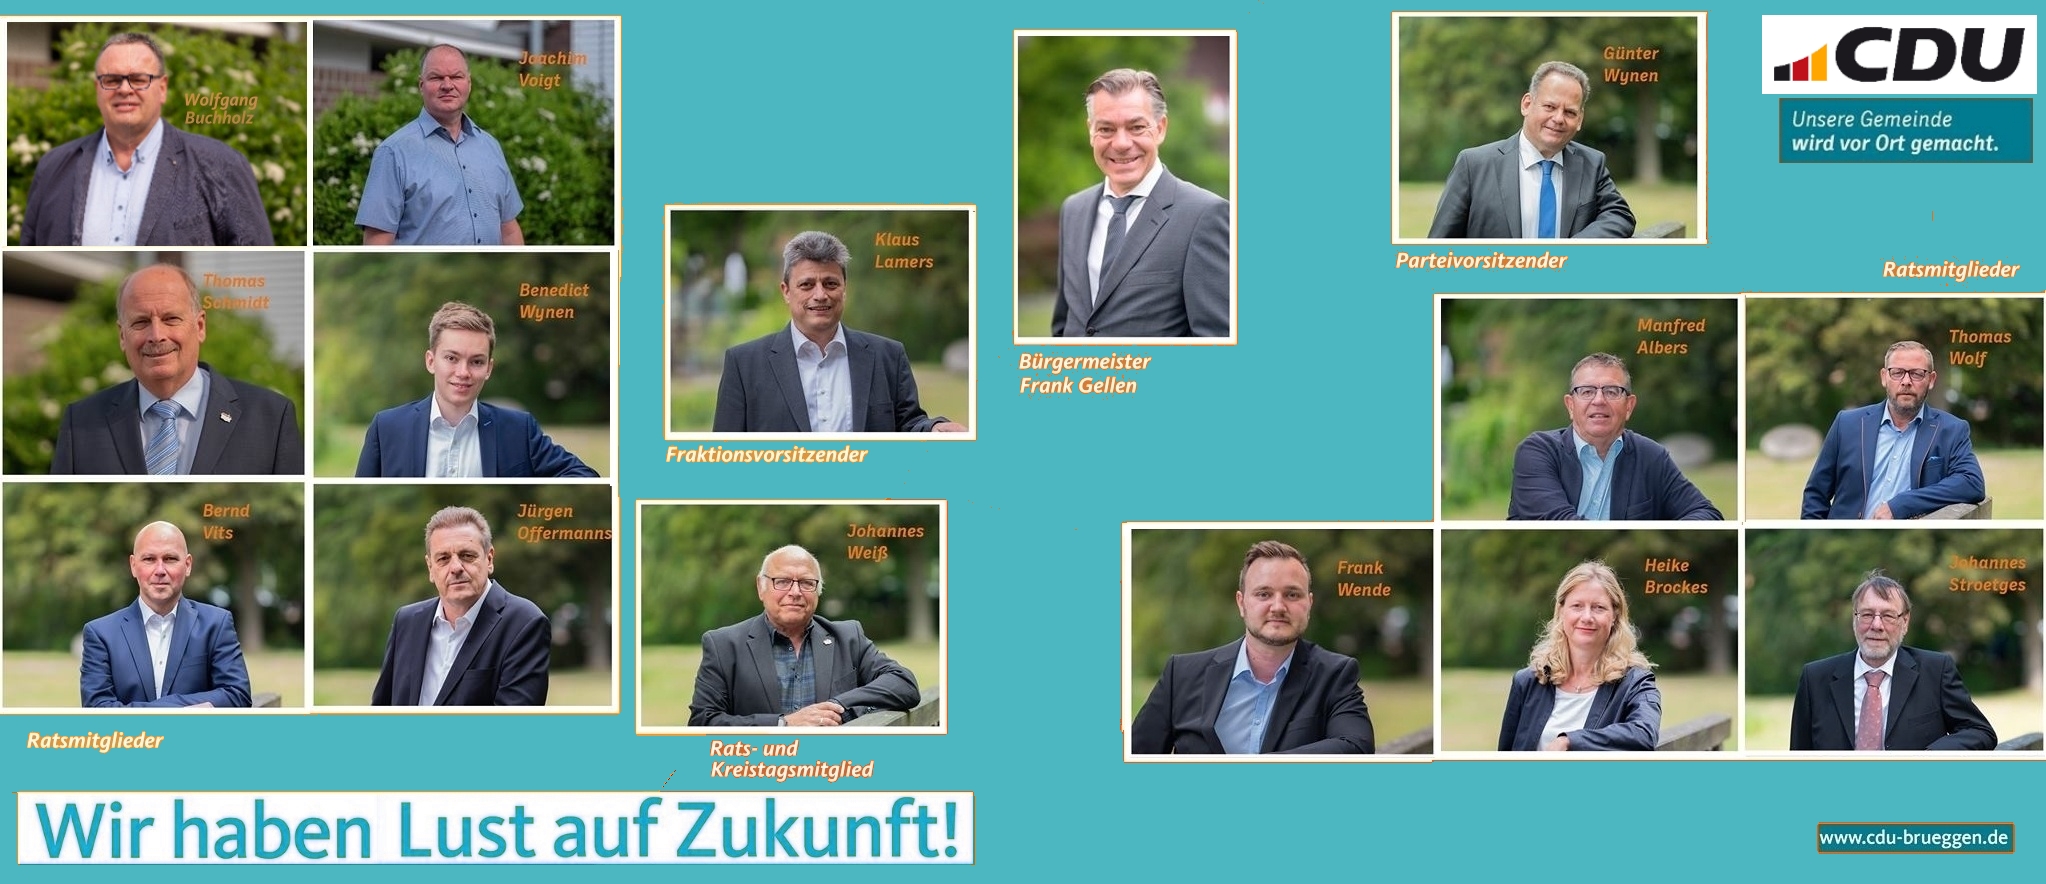 Aschermittwochstreffen und Mitgliederversammlung der CDU Brüggen 